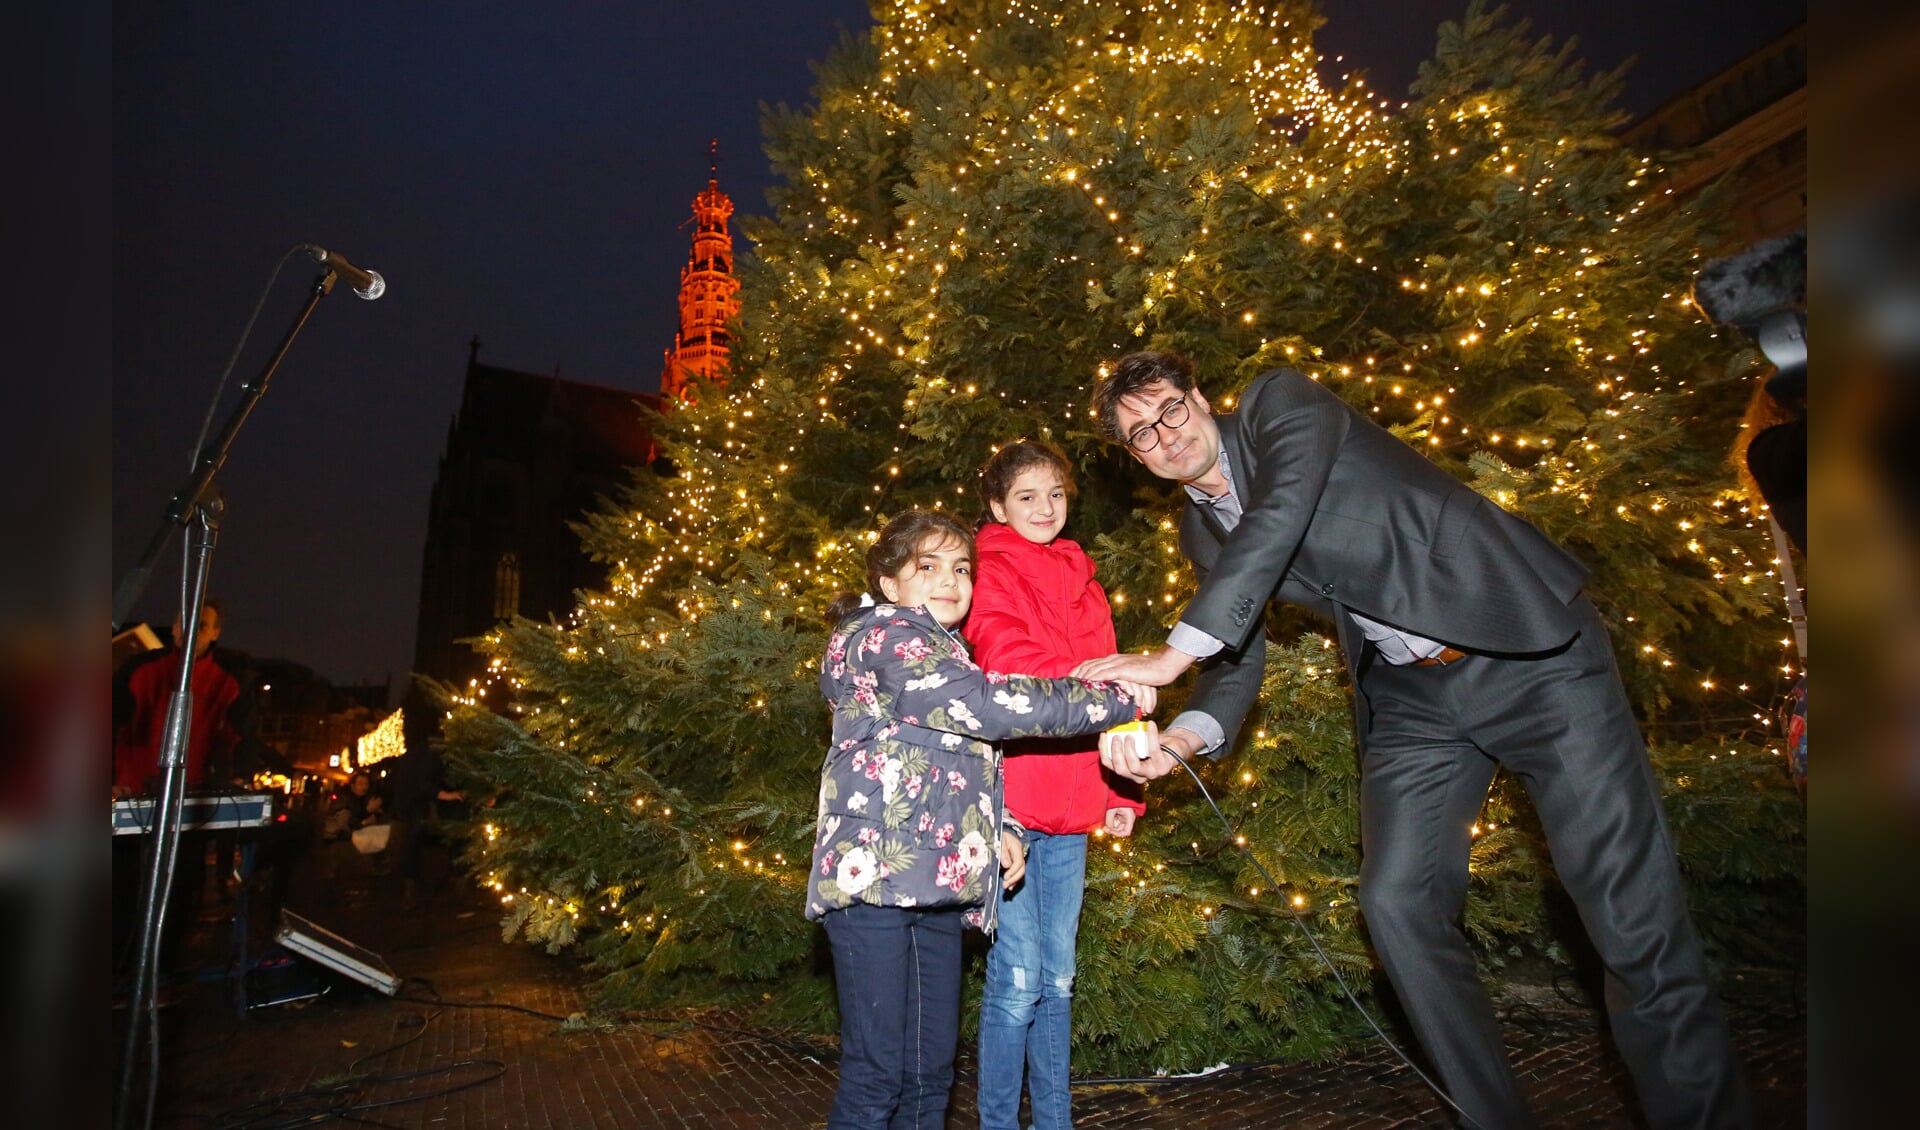 Wethouder Merijn Snoek poseert met de zusjes voor de gigantische kerstboom op de Grote Markt. (Foto: Rowin van Diest)